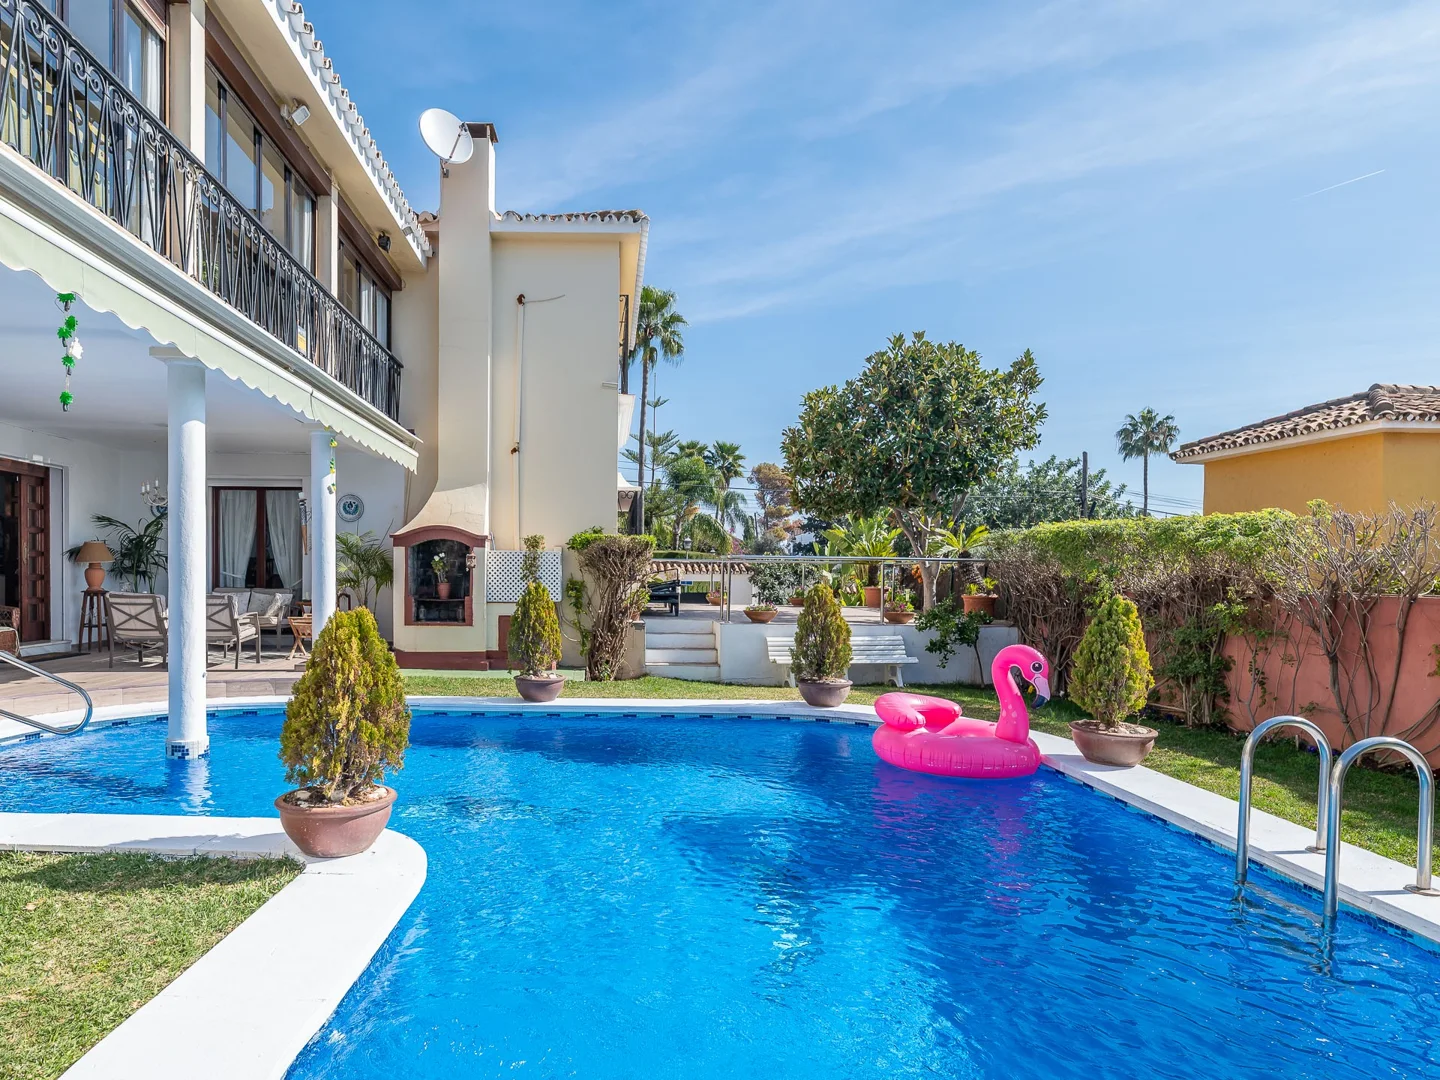 Villa en una tranquila urbanización al lado de la ciudad de Marbella